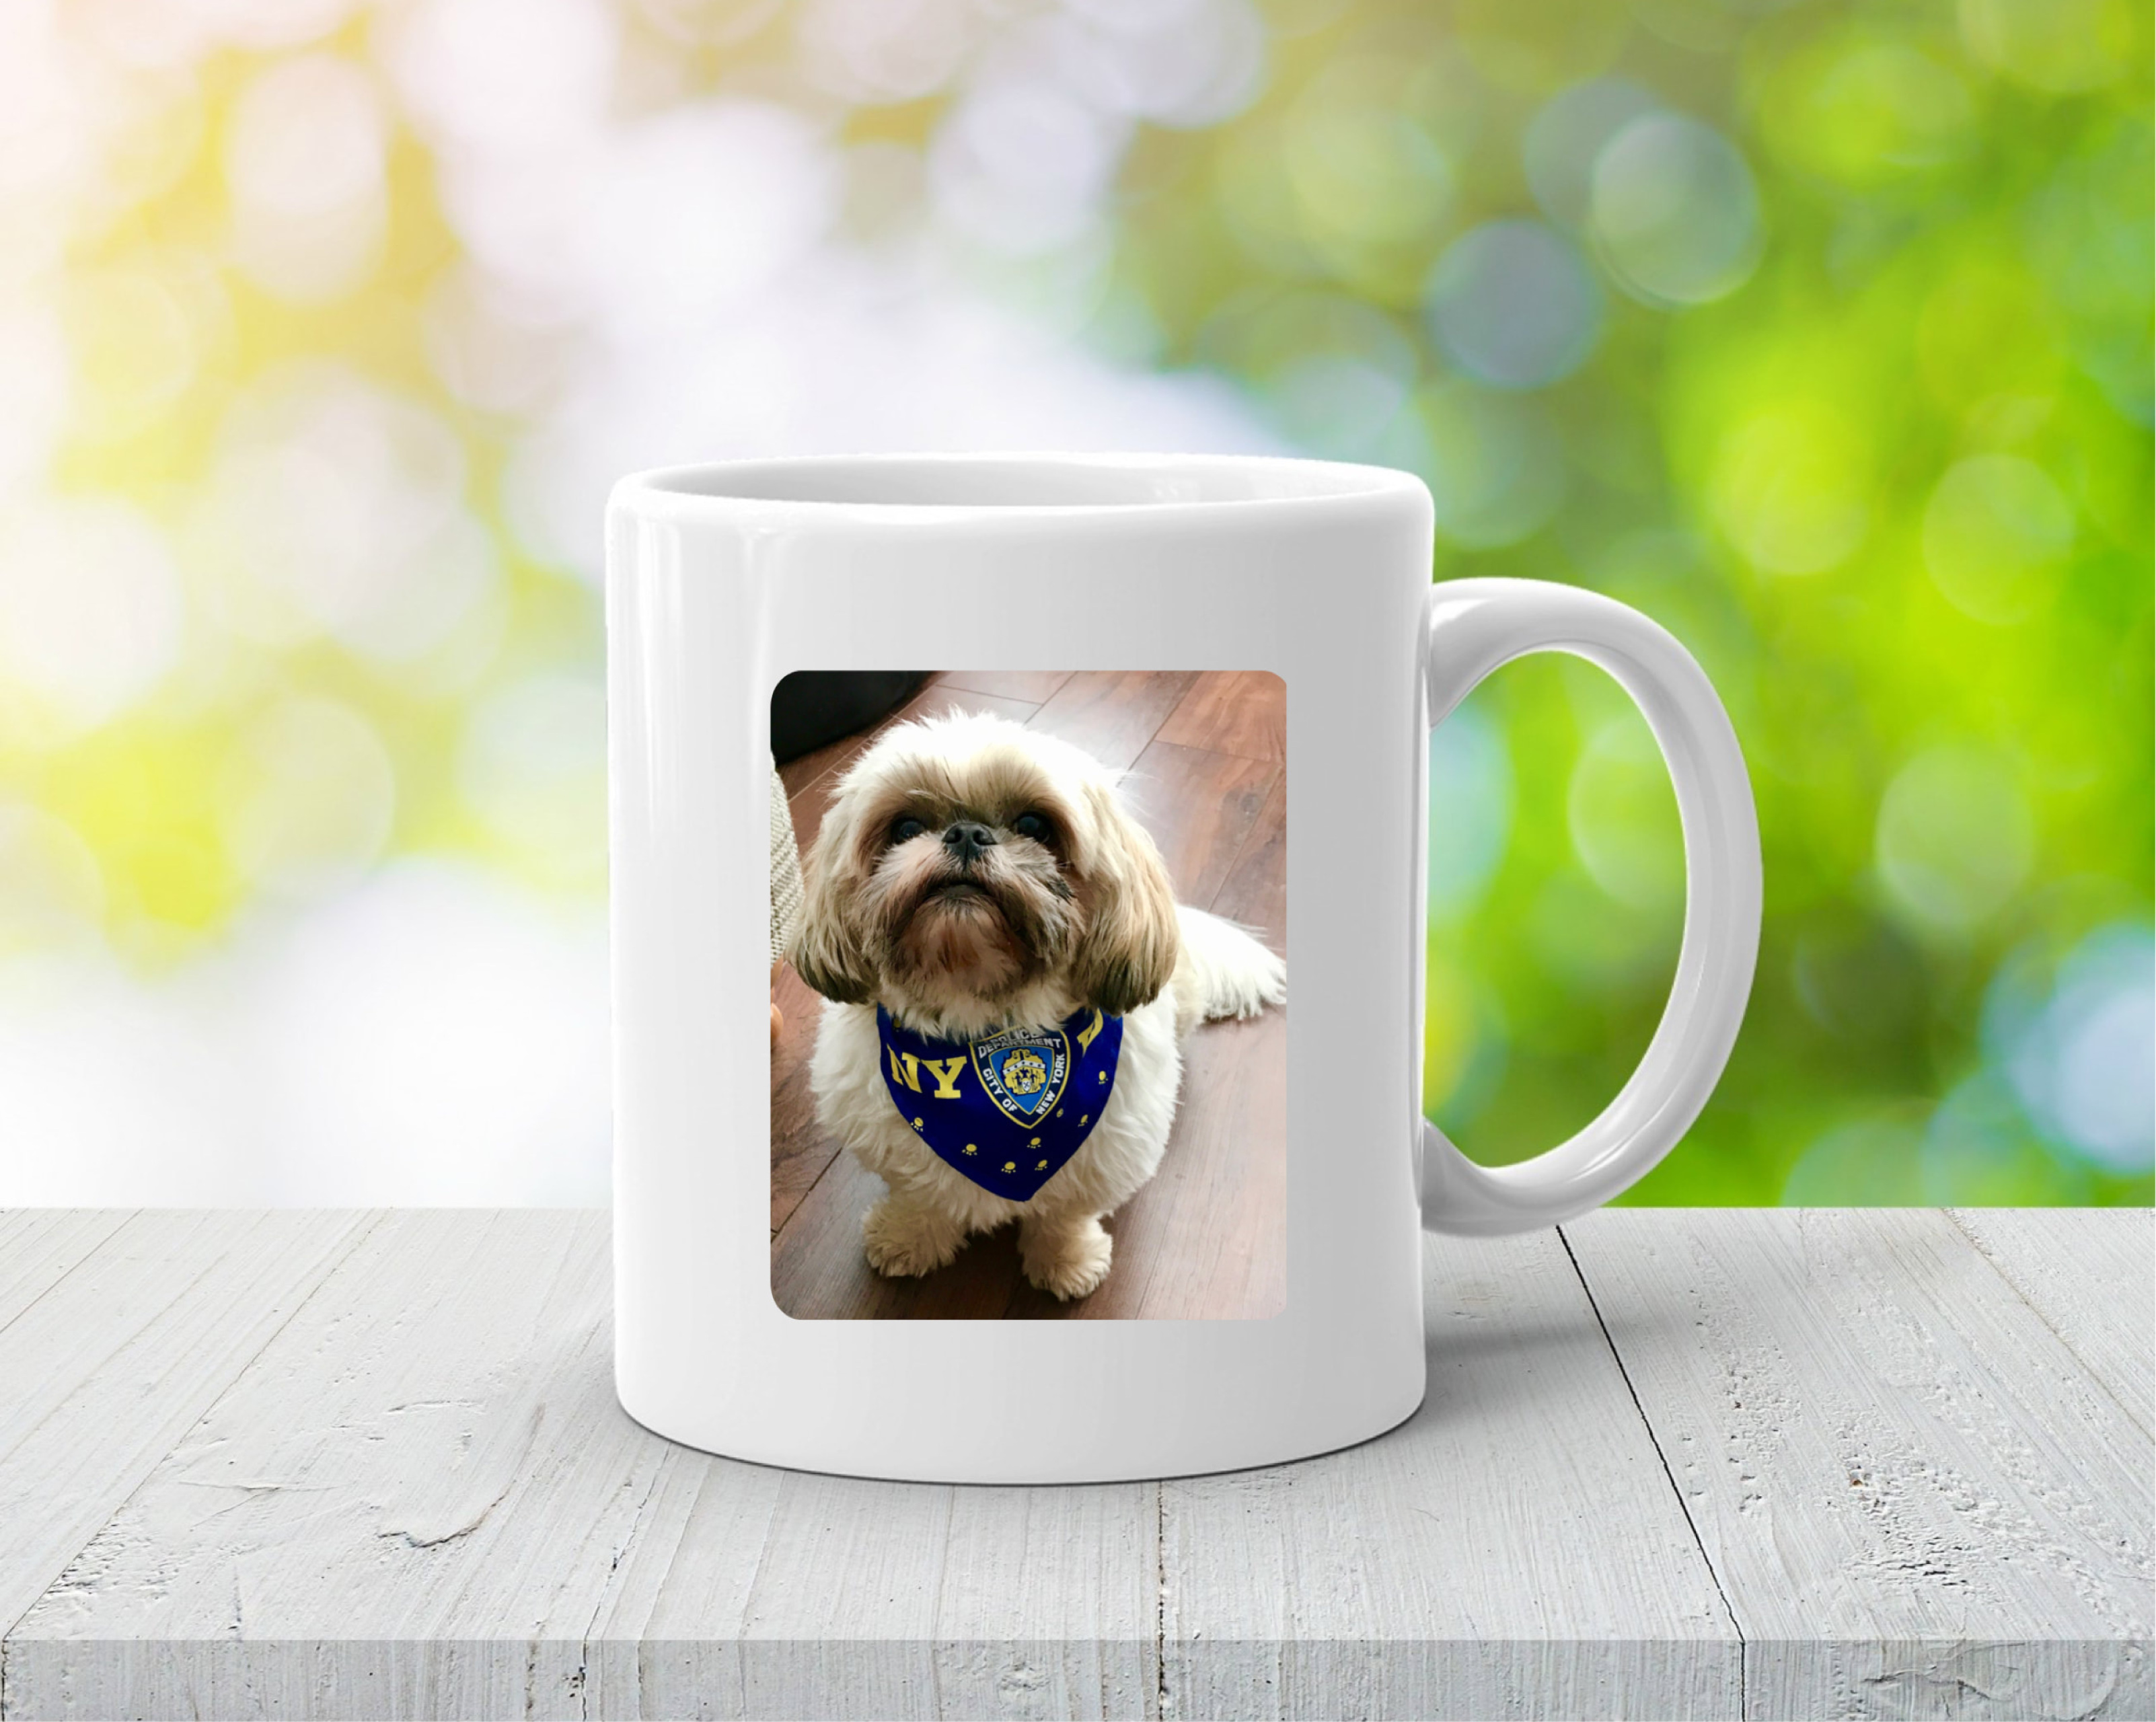 Personalised dog photo mug